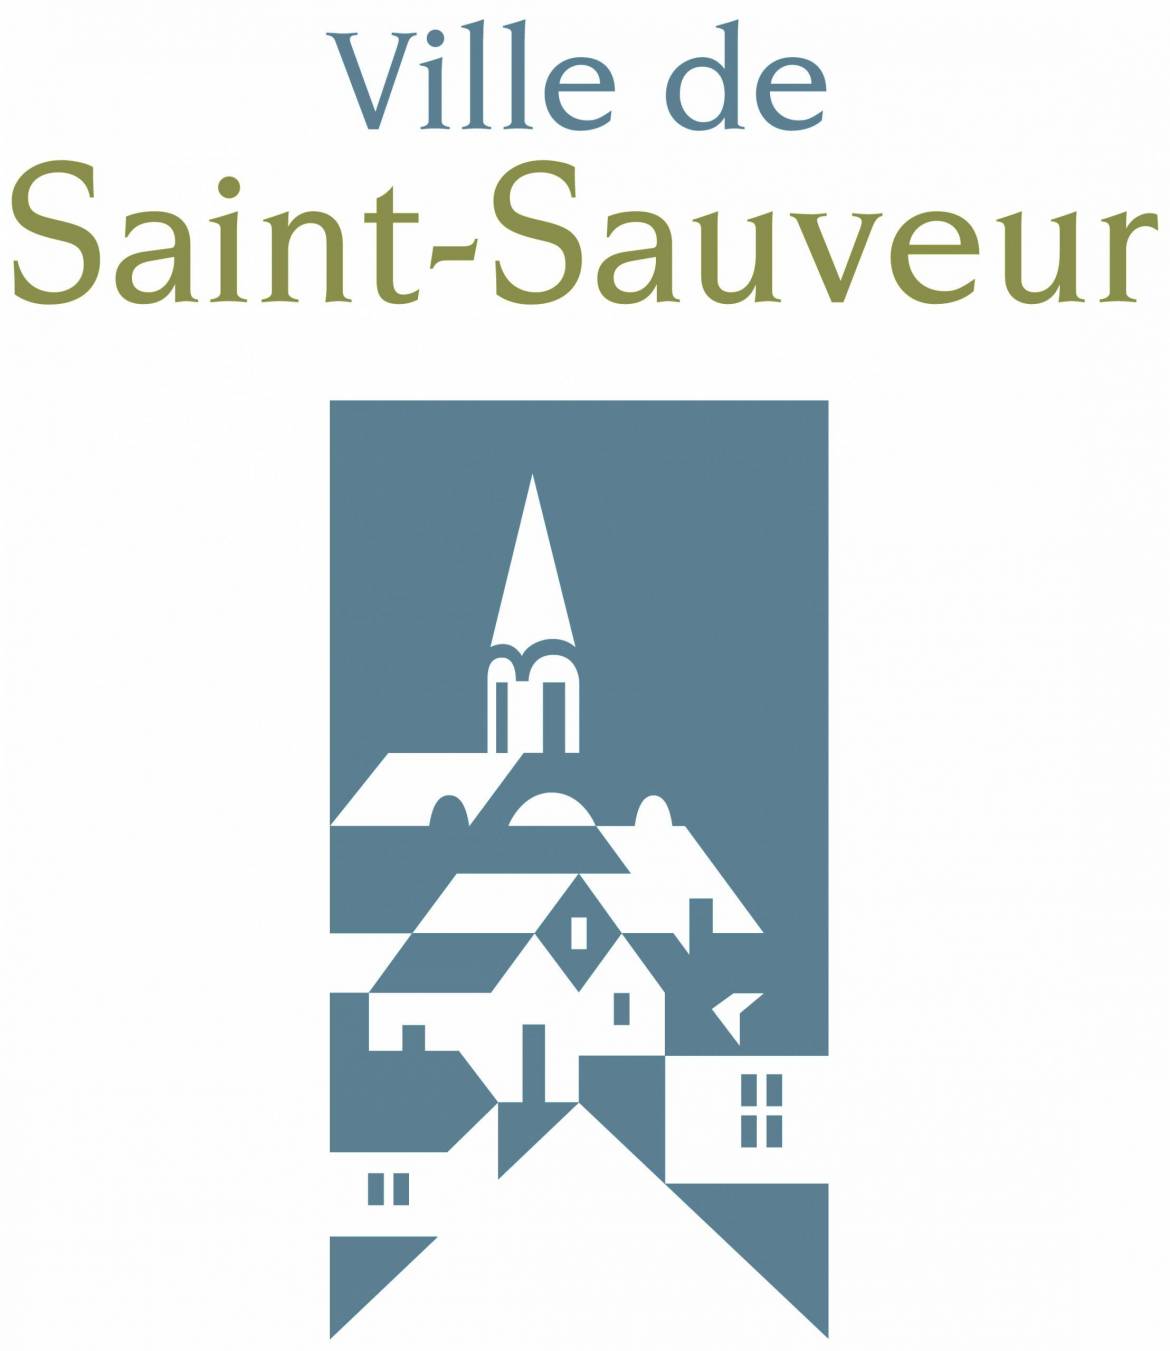 Ville-de-Saint-Sauveur-2015_Pantone-scaled.jpg